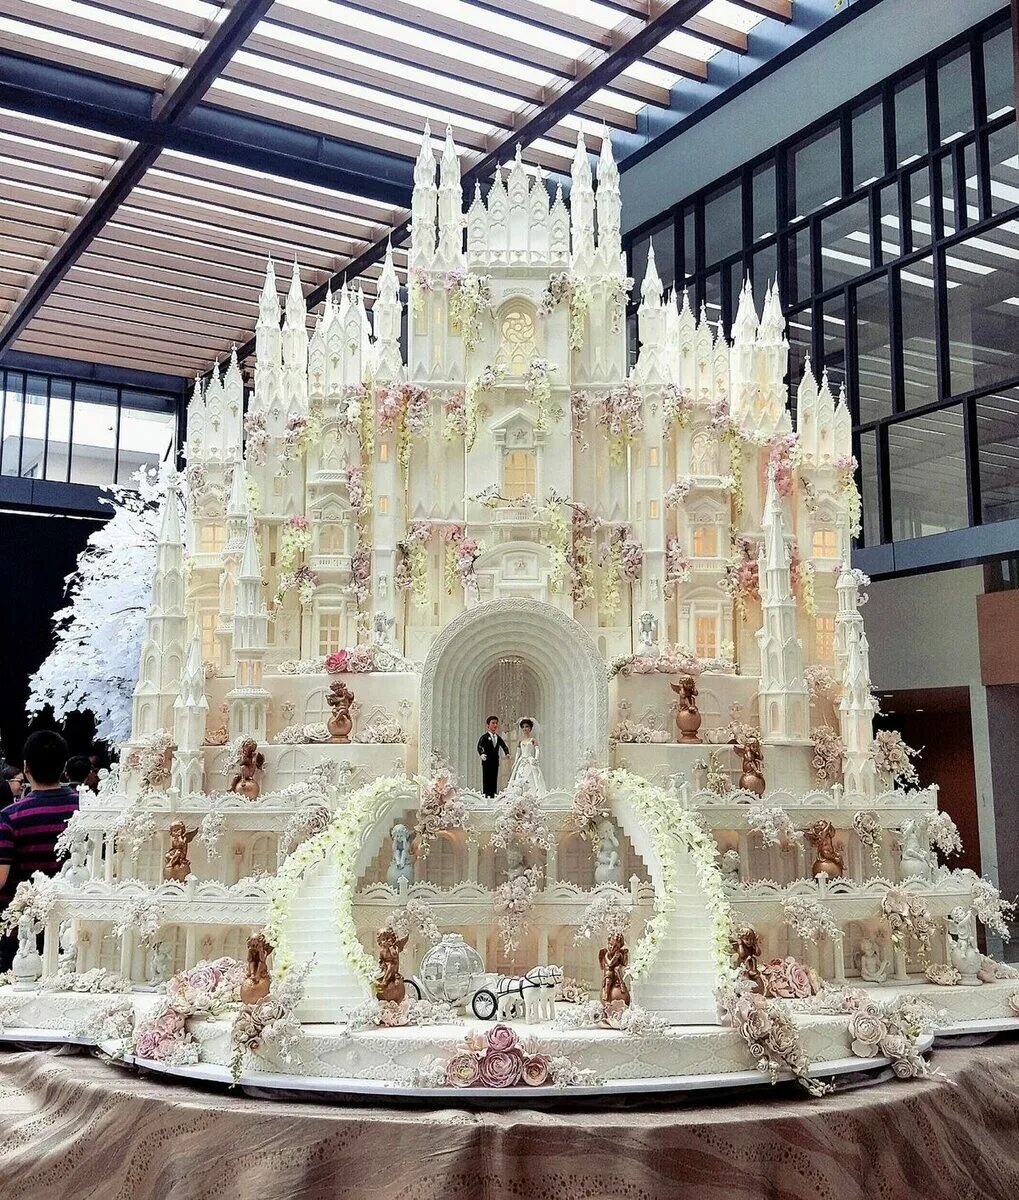 Приятным сюрпризом для всех стал огромный торт. Ренат Агзамов торт дворец Цвингер. Самый большой торта Рината Огзамова.